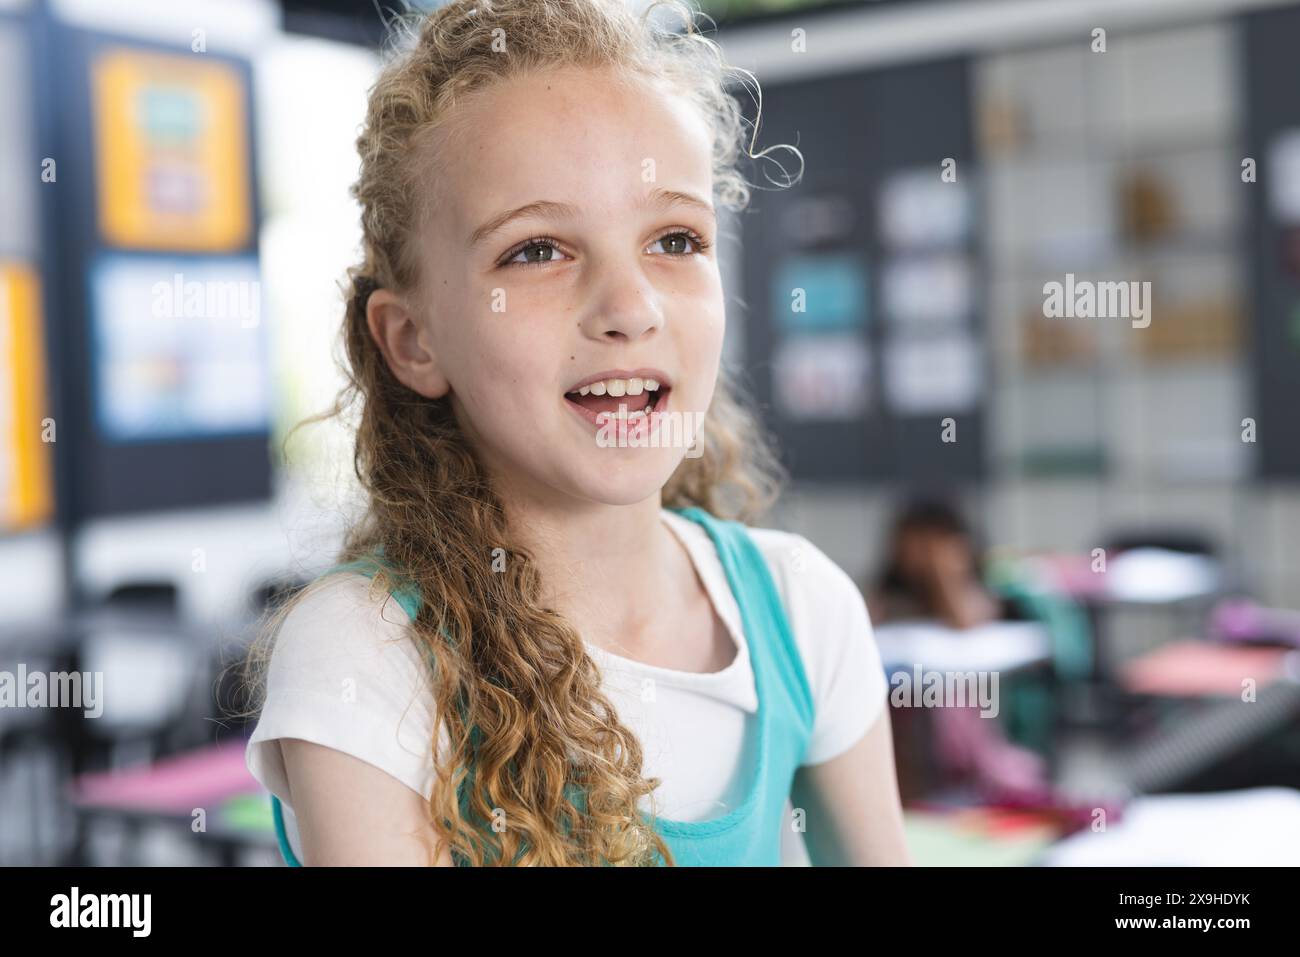 Ragazza caucasica con capelli biondi ricci sorride in un'aula scolastica Foto Stock